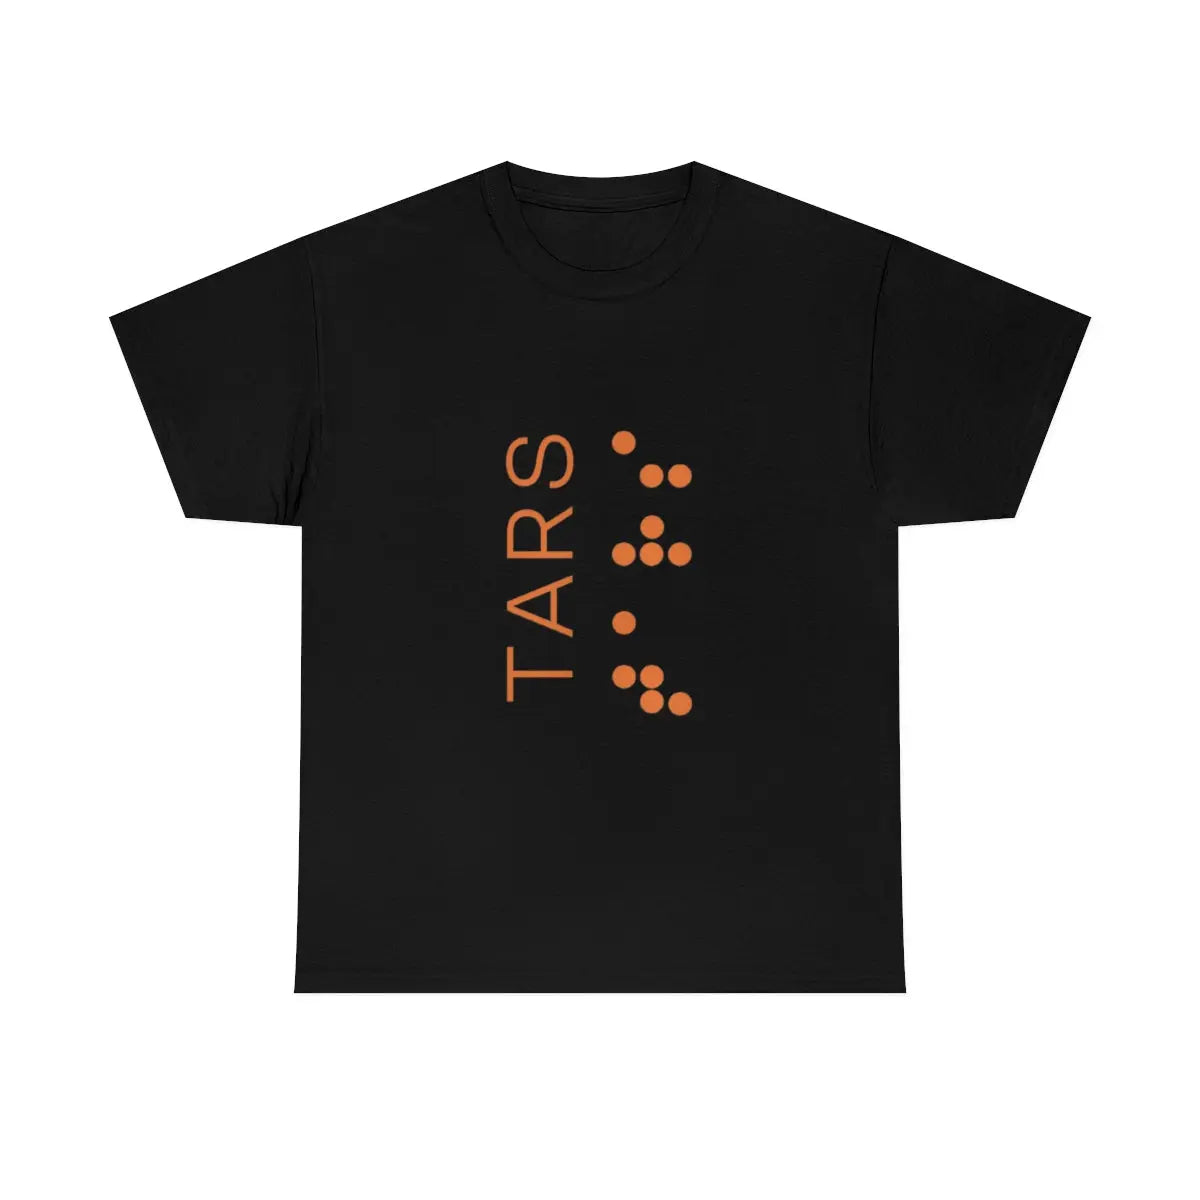 Interstellar - TARS Minimalist T-Shirt Printify